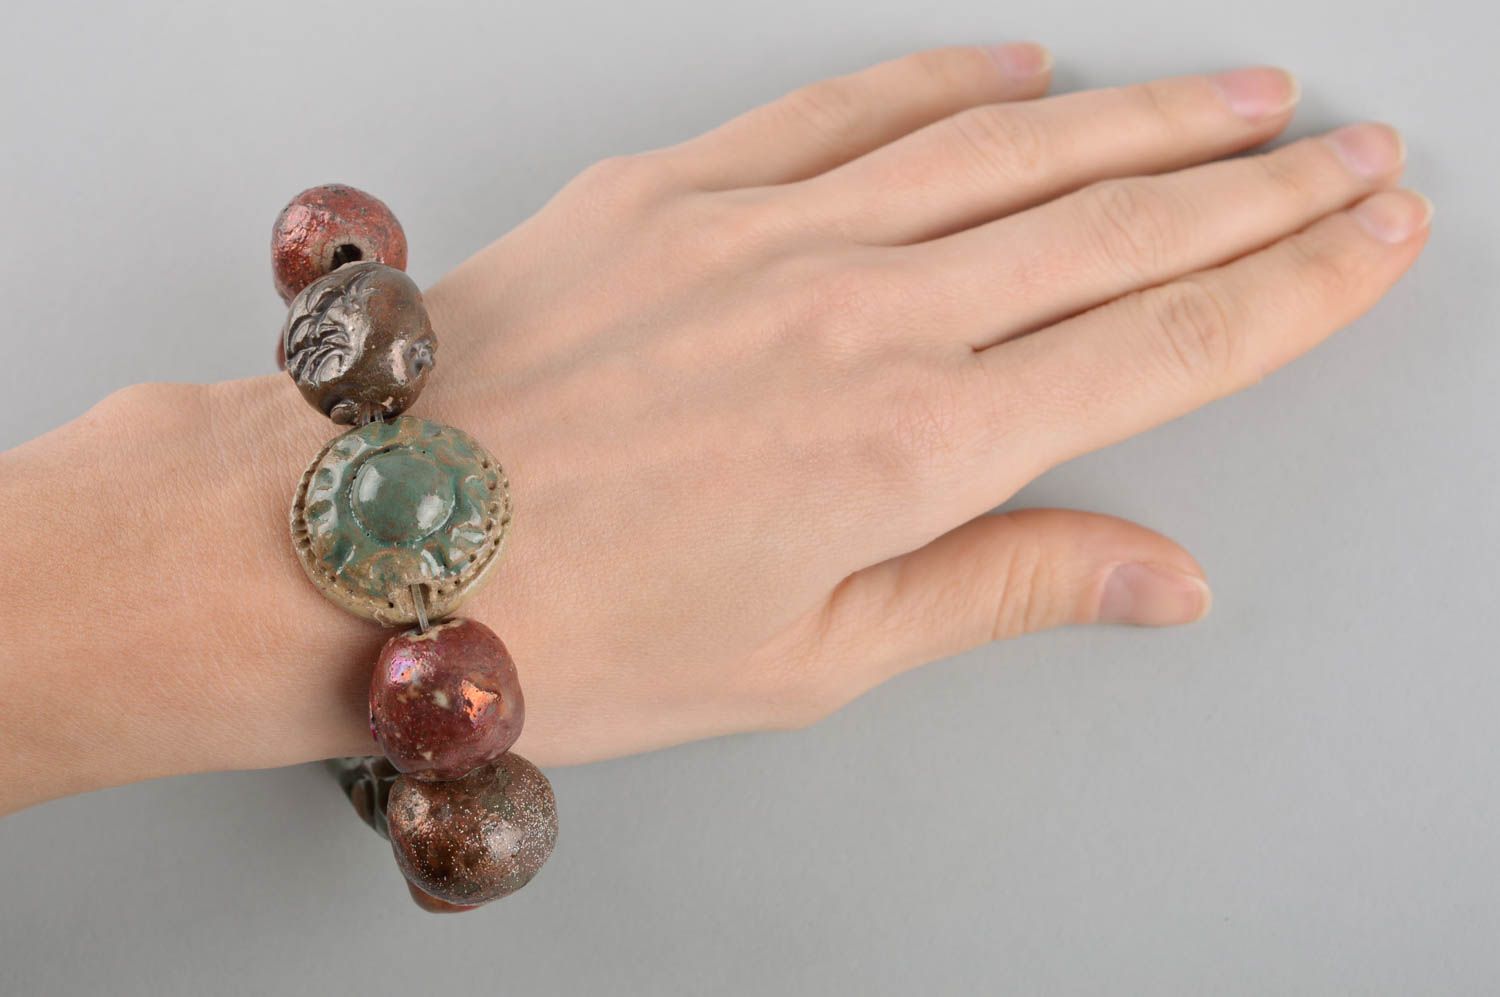 Womens handmade ceramic bracelet wrist bracelet designs trendy jewelry photo 5